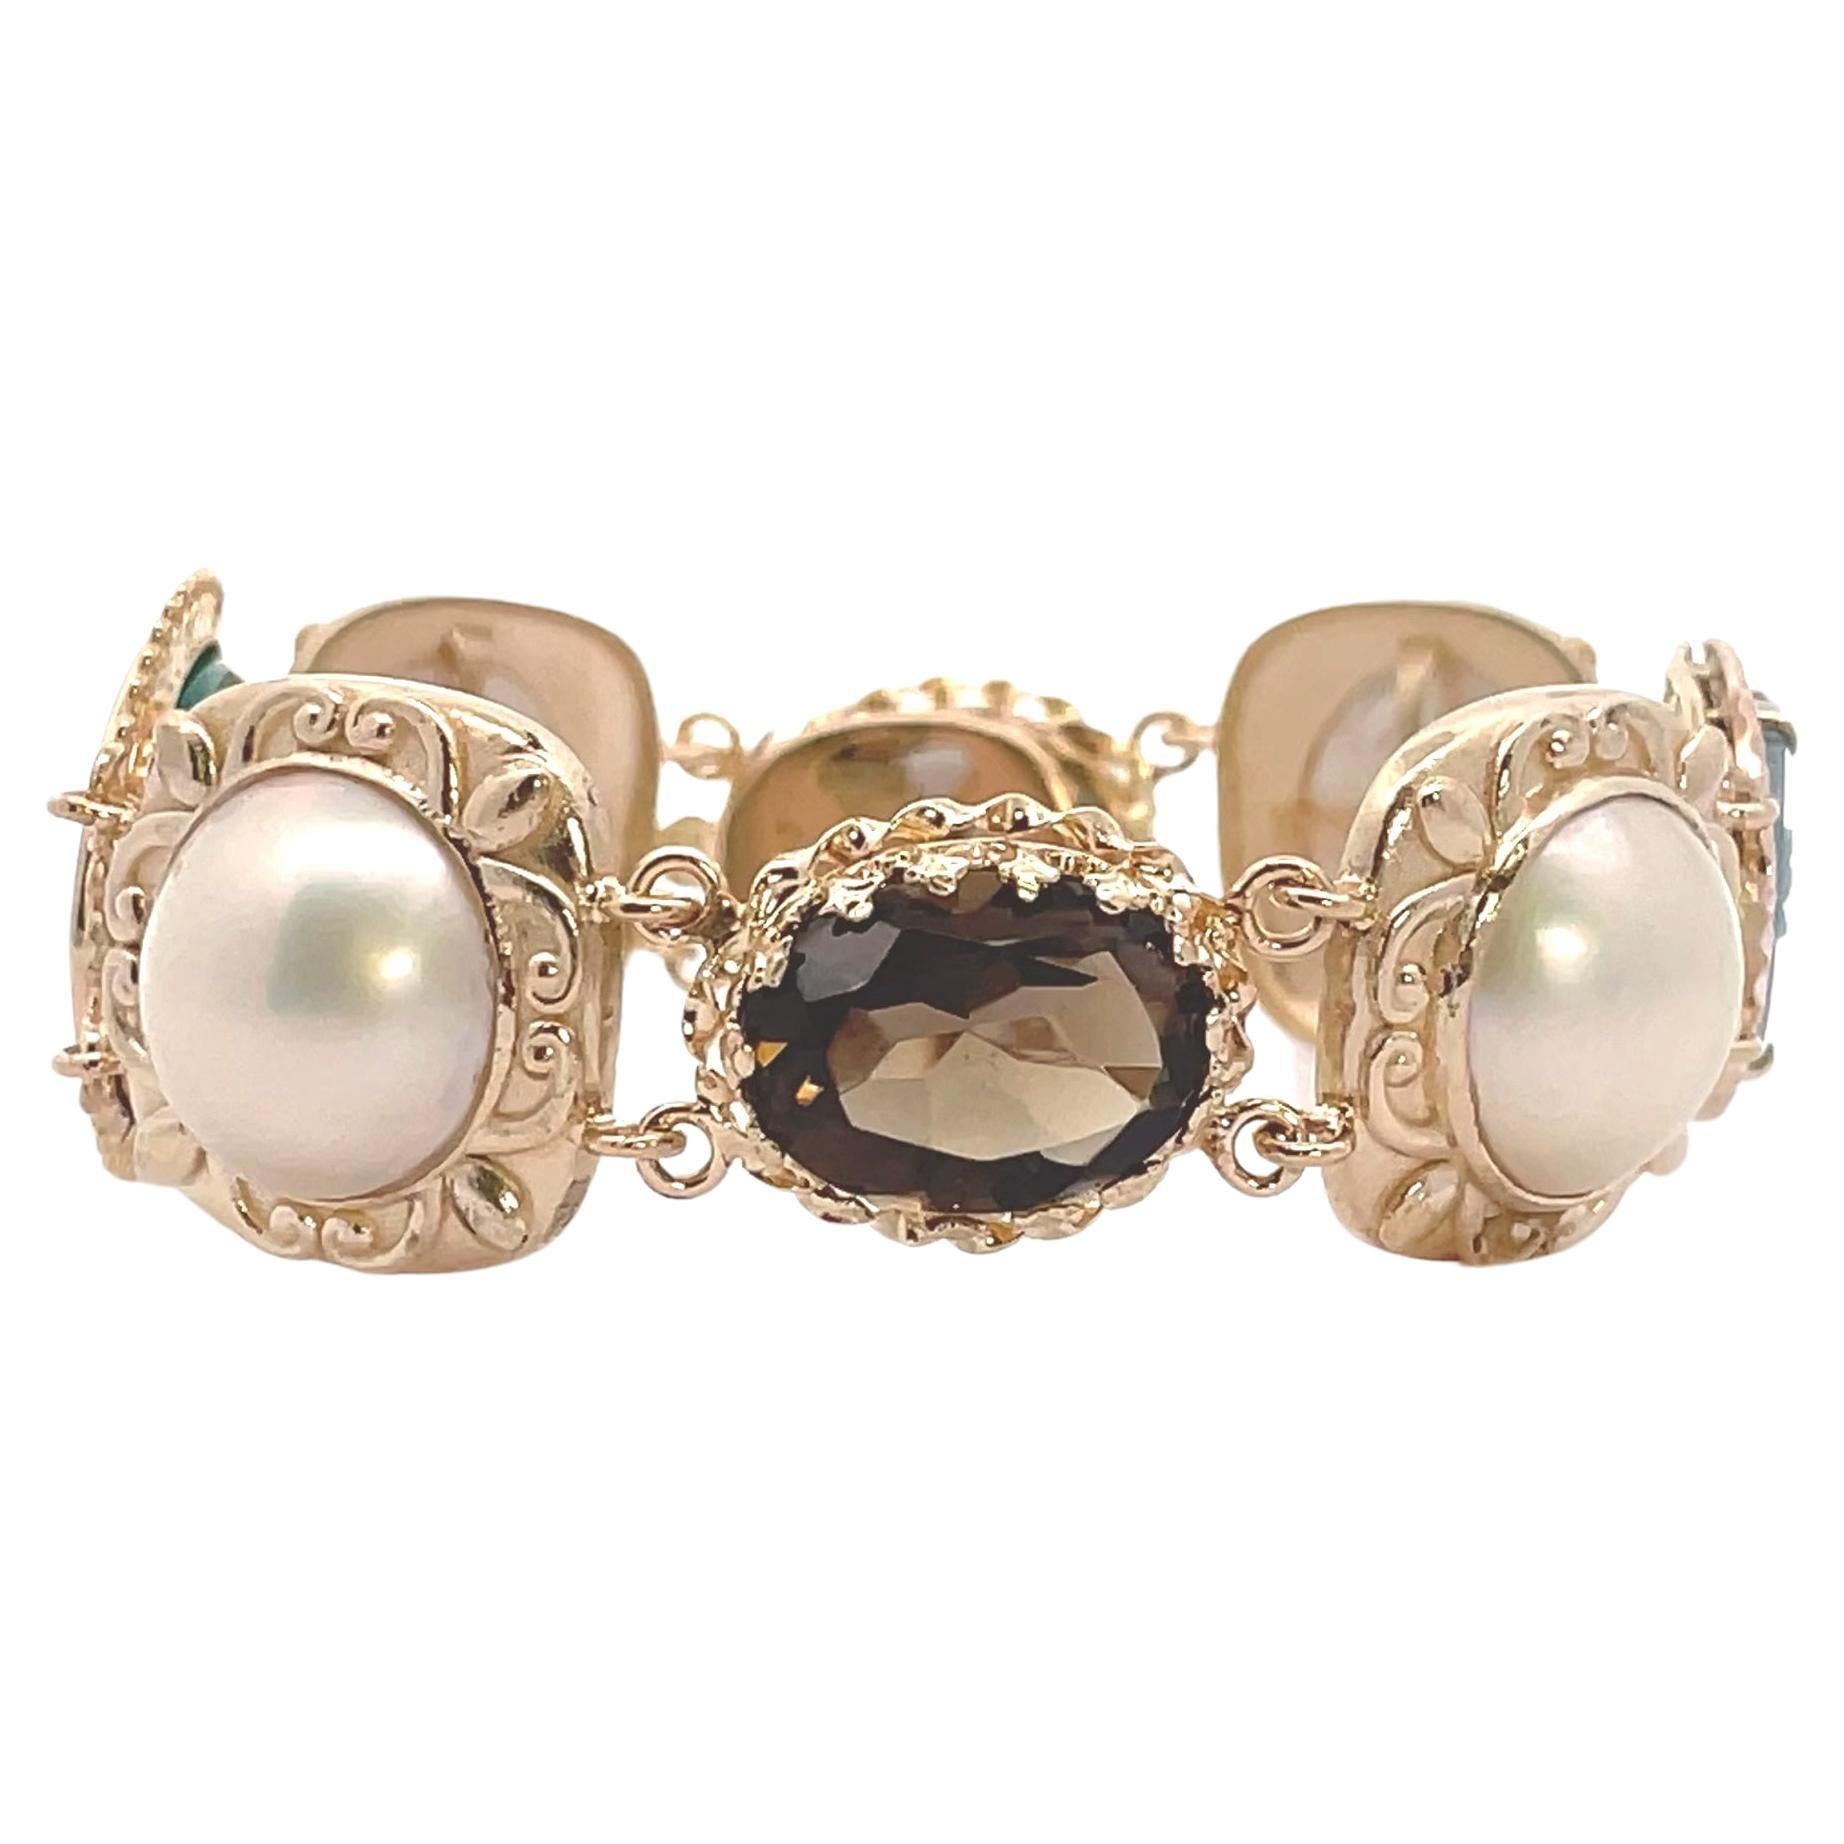 Einzigartiges Armband aus 14 Karat Gelbgold, zusammengesetzt aus Vintage-Komponenten. Das Armband besteht aus 4 Mobe-Perlen, zwei Kameen und zwei ovalen Rauchtopasen.  Eine Kamee ist aus grünem Onyx geschnitzt und stellt das Profil einer Frau dar,